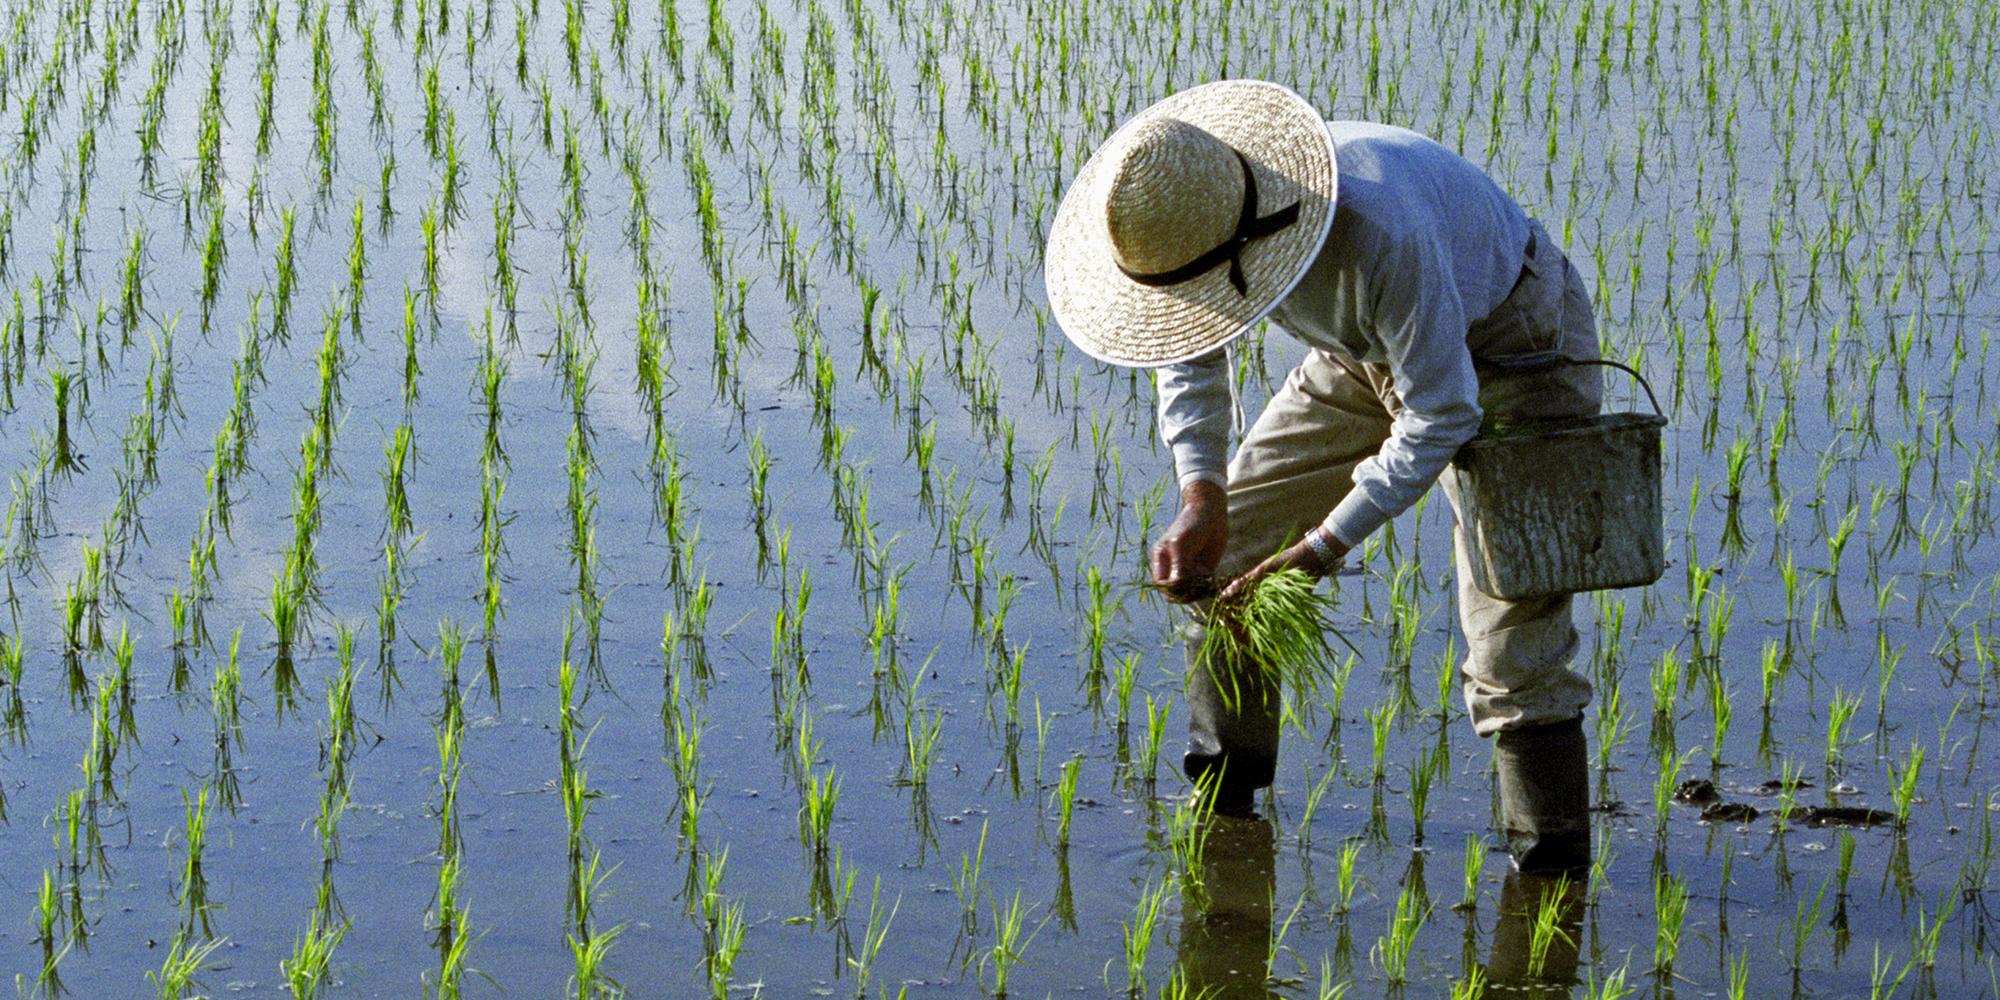 Рис кидают в воду. Рисоводство в Китае. Рисоводство в Японии. Рисовые плантации в Японии. Земледелие, рис в Китае.